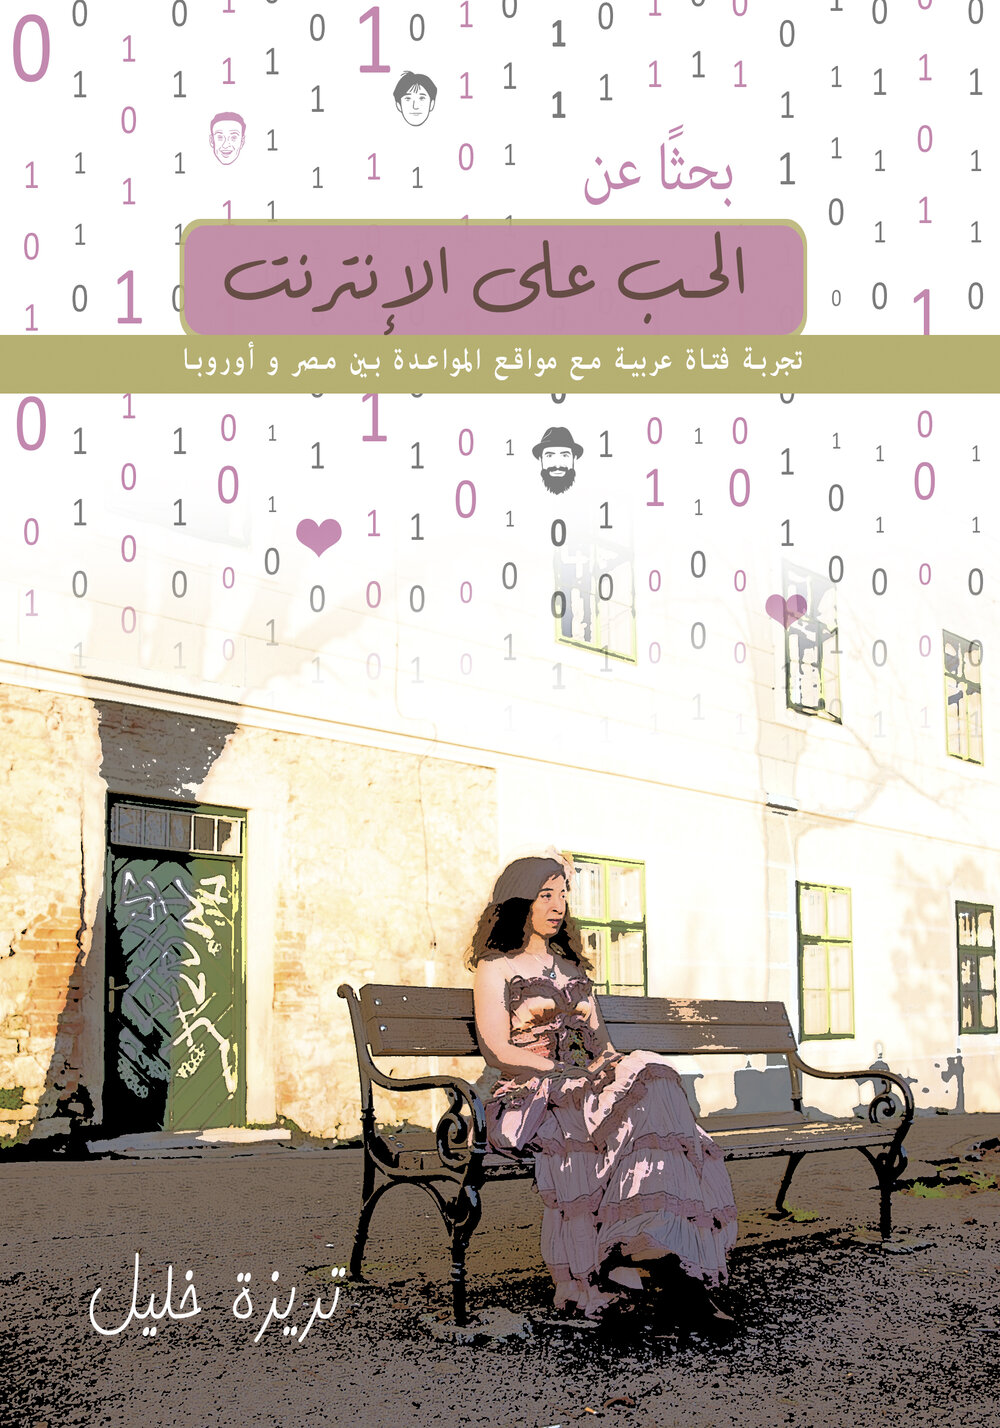 أسرار الحب عبر الإنترنت: قصص الأجنبيات الجميلات - 2 تطور طرق البحث عن الحب والتواصل في العصر الرقمي